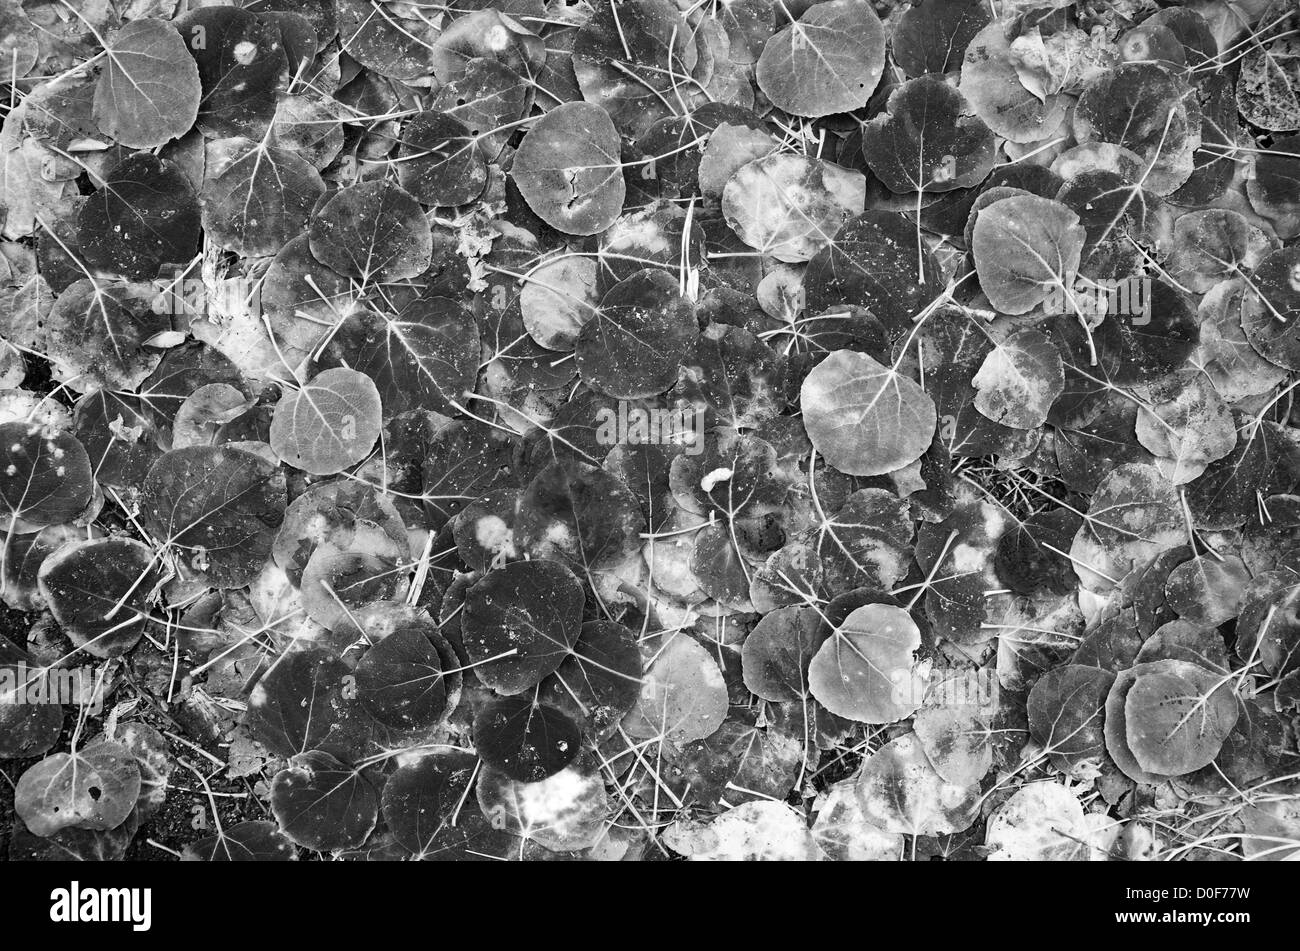 schwarzen und weißen Hintergrundbild von aspen Laub auf dem Boden Stockfoto